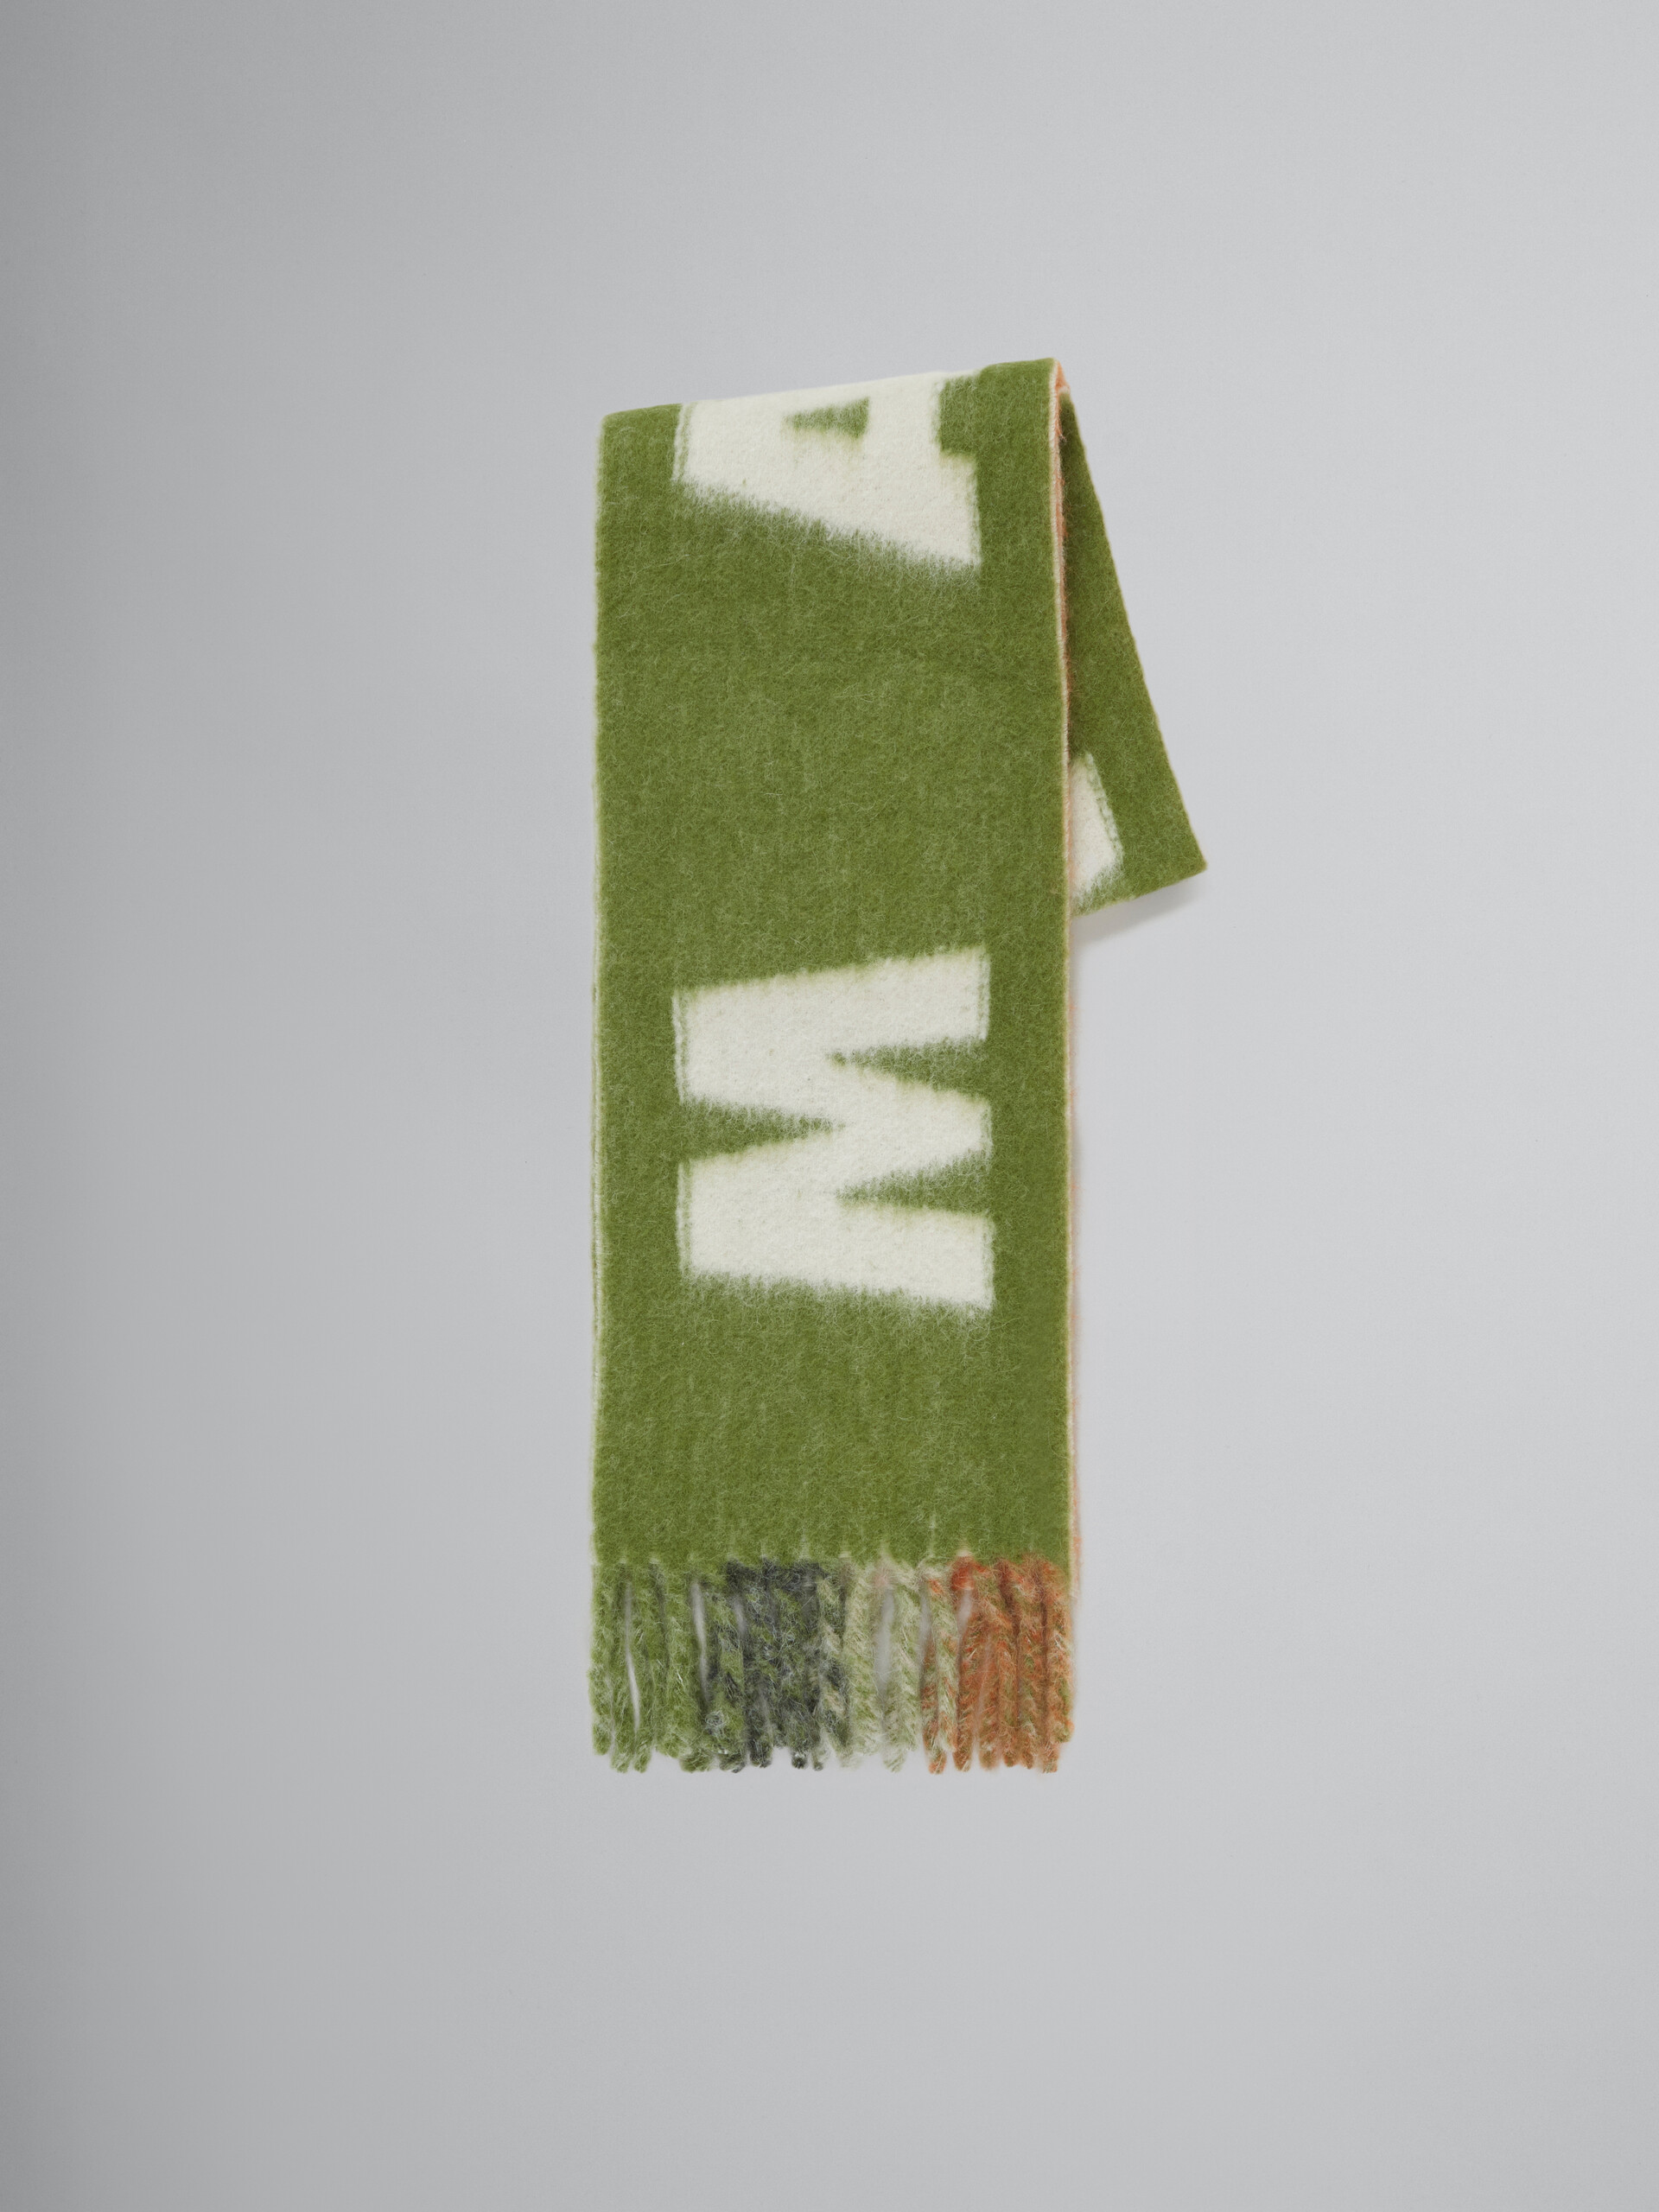 ライトブルー モヘアとウール製スカーフ、マキシロゴ入り - アクセサリー - Image 1